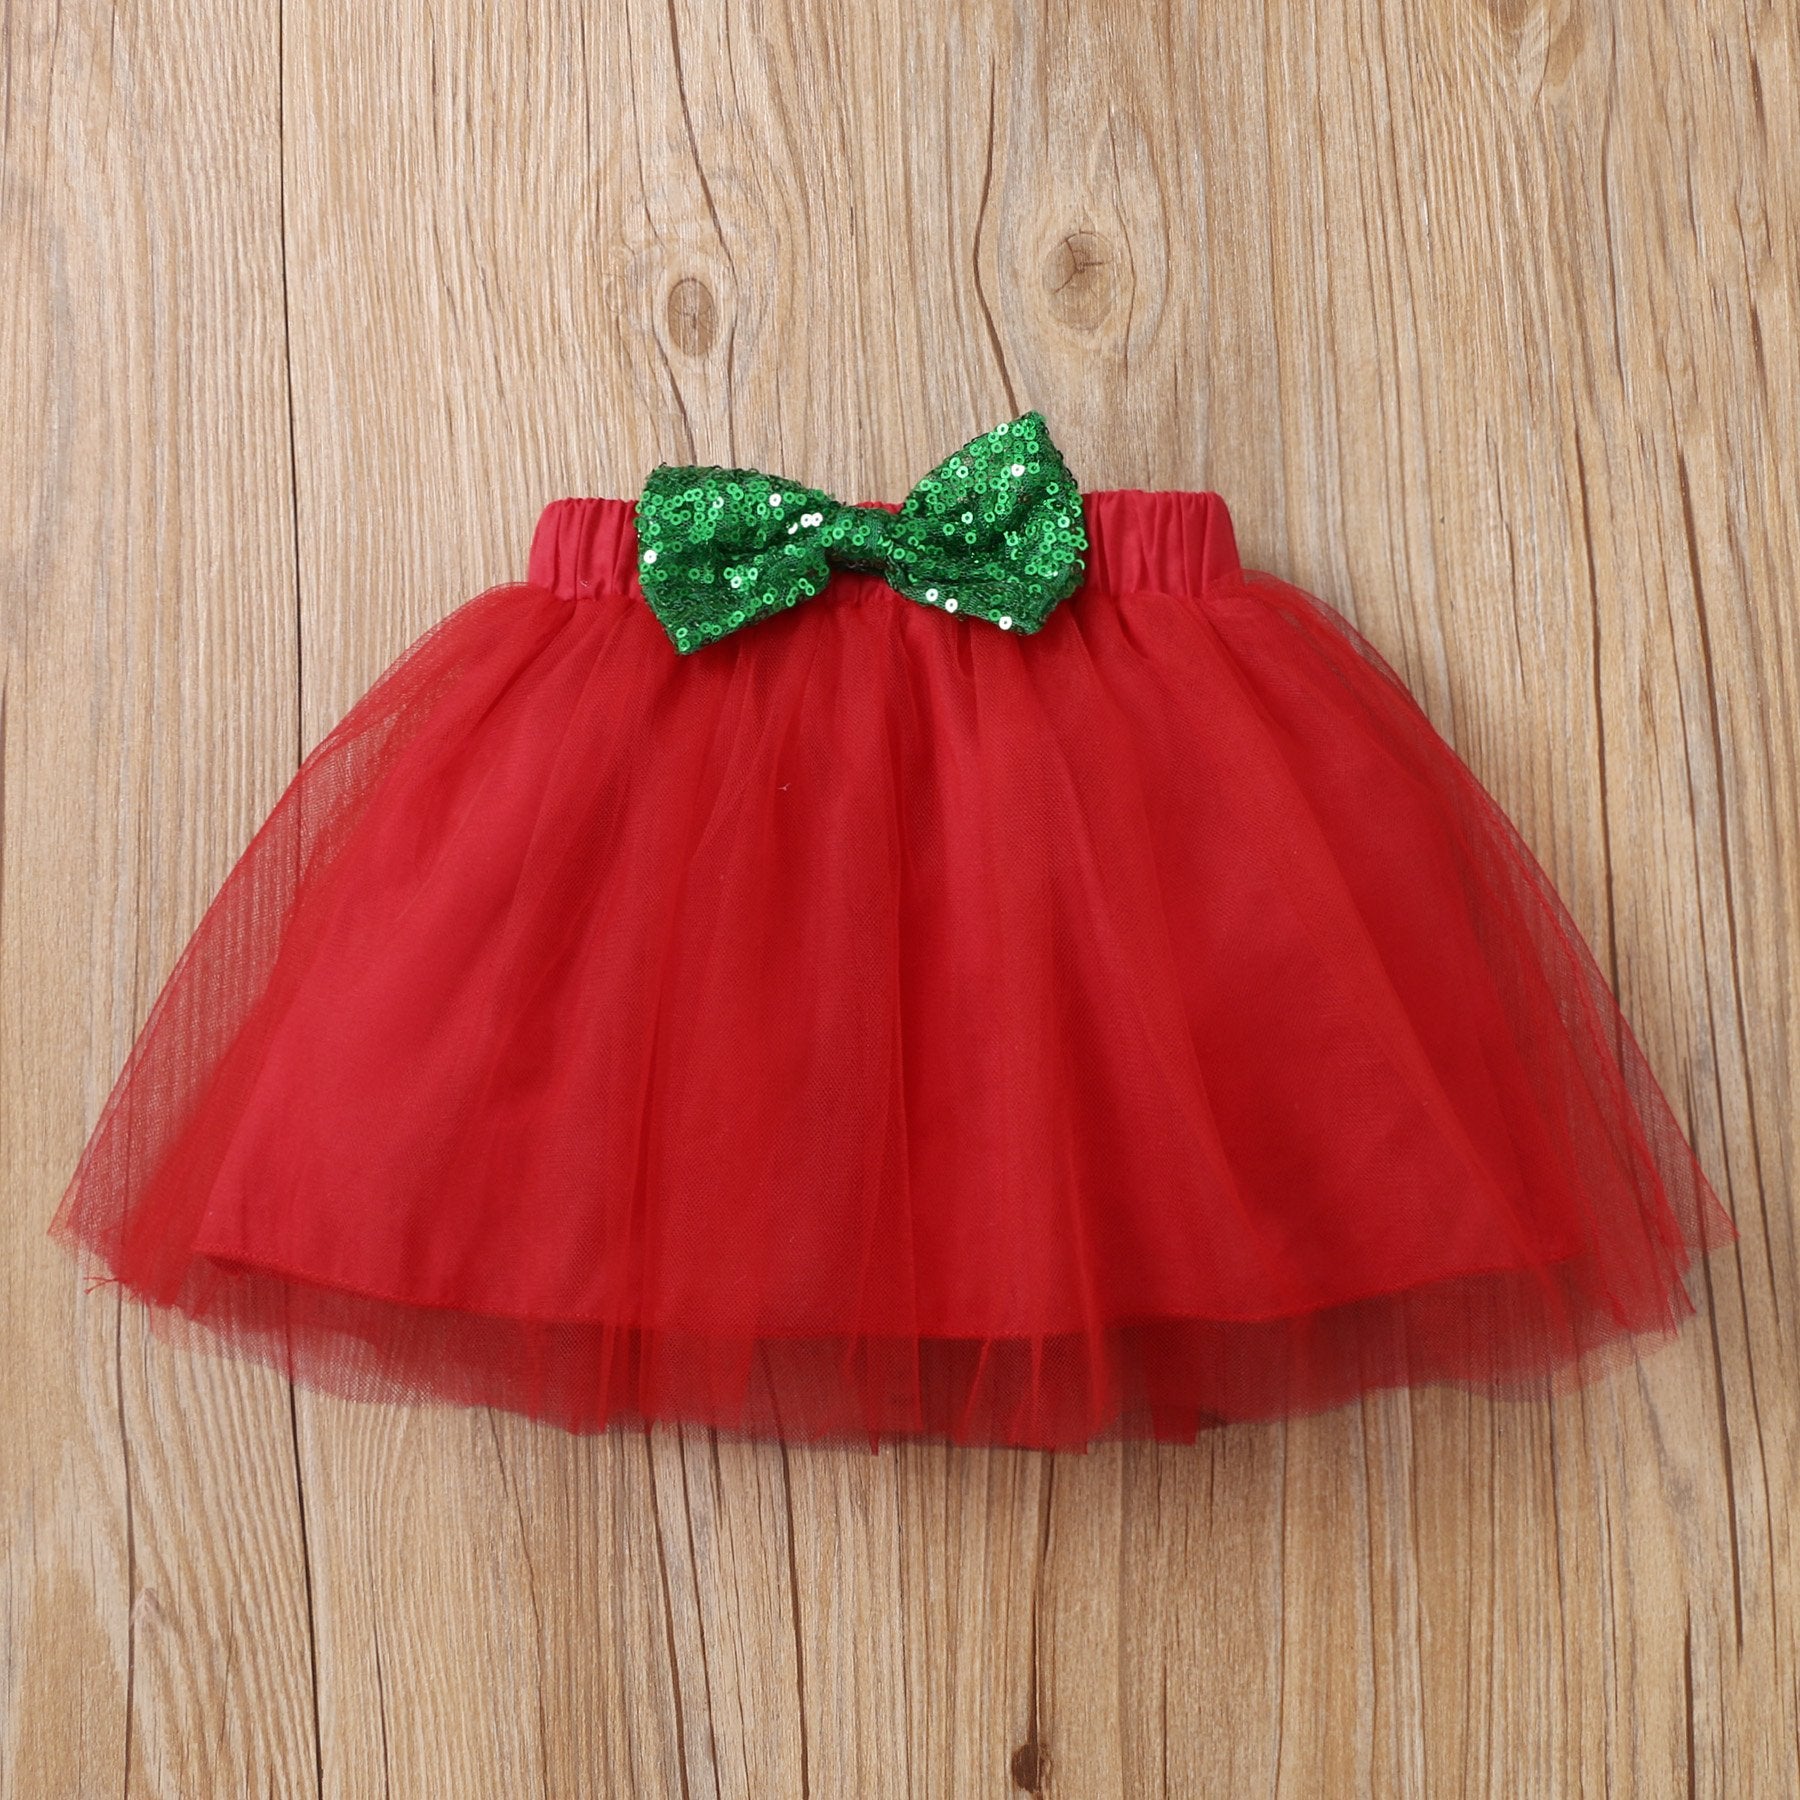 Conjunto de falda de bebé con estampado de letras My 1st Christmas de 4 piezas